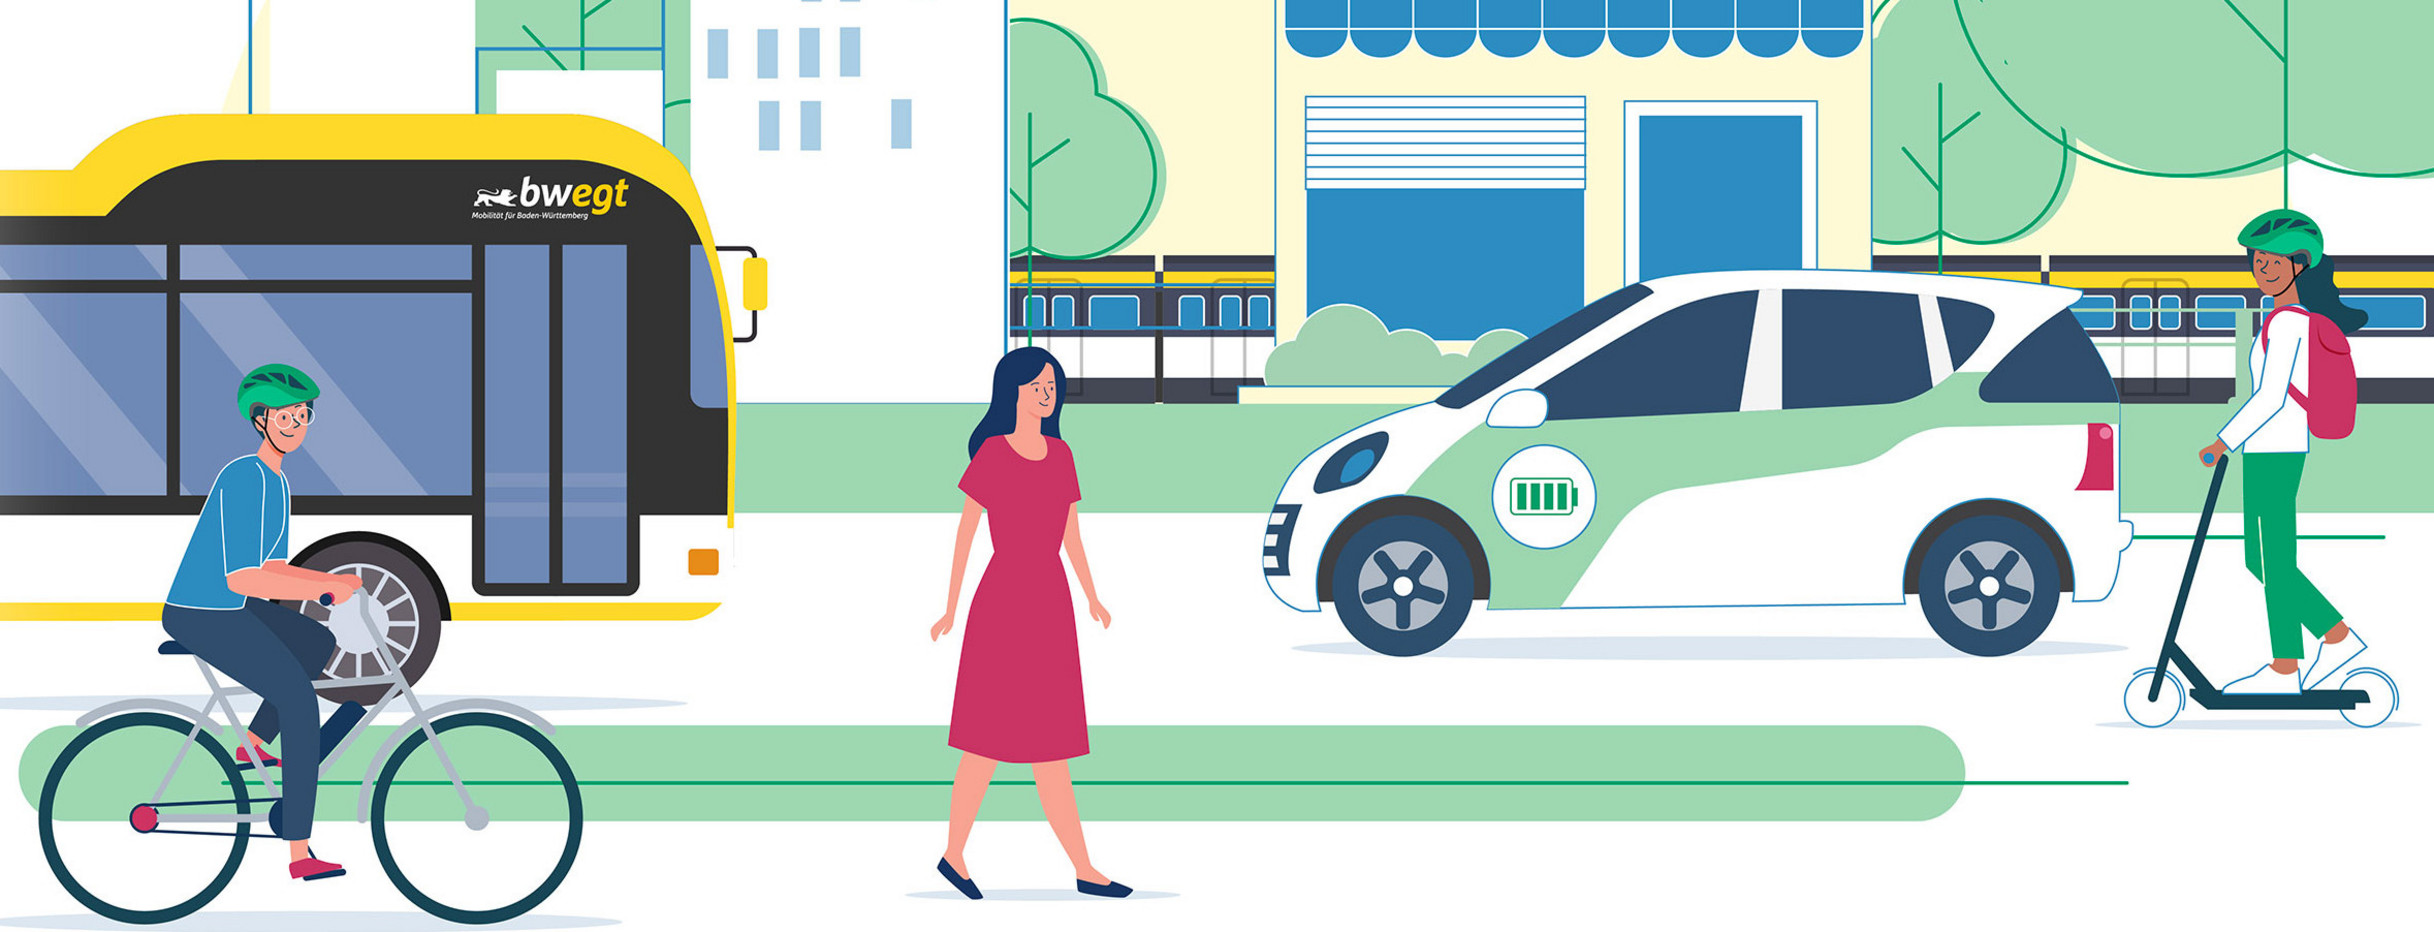 Illustrierte Bildcollage mehrer Personen mit verschiedener Fortbewegungsmitteln wie Bus und Bahn, Fahrrad, E-Auto oder E-Scooter un zu Fuß vor der Kulisse einer grünen Stadtmitte auf dem Weg zum Einkaufen oder zur Arbeit.